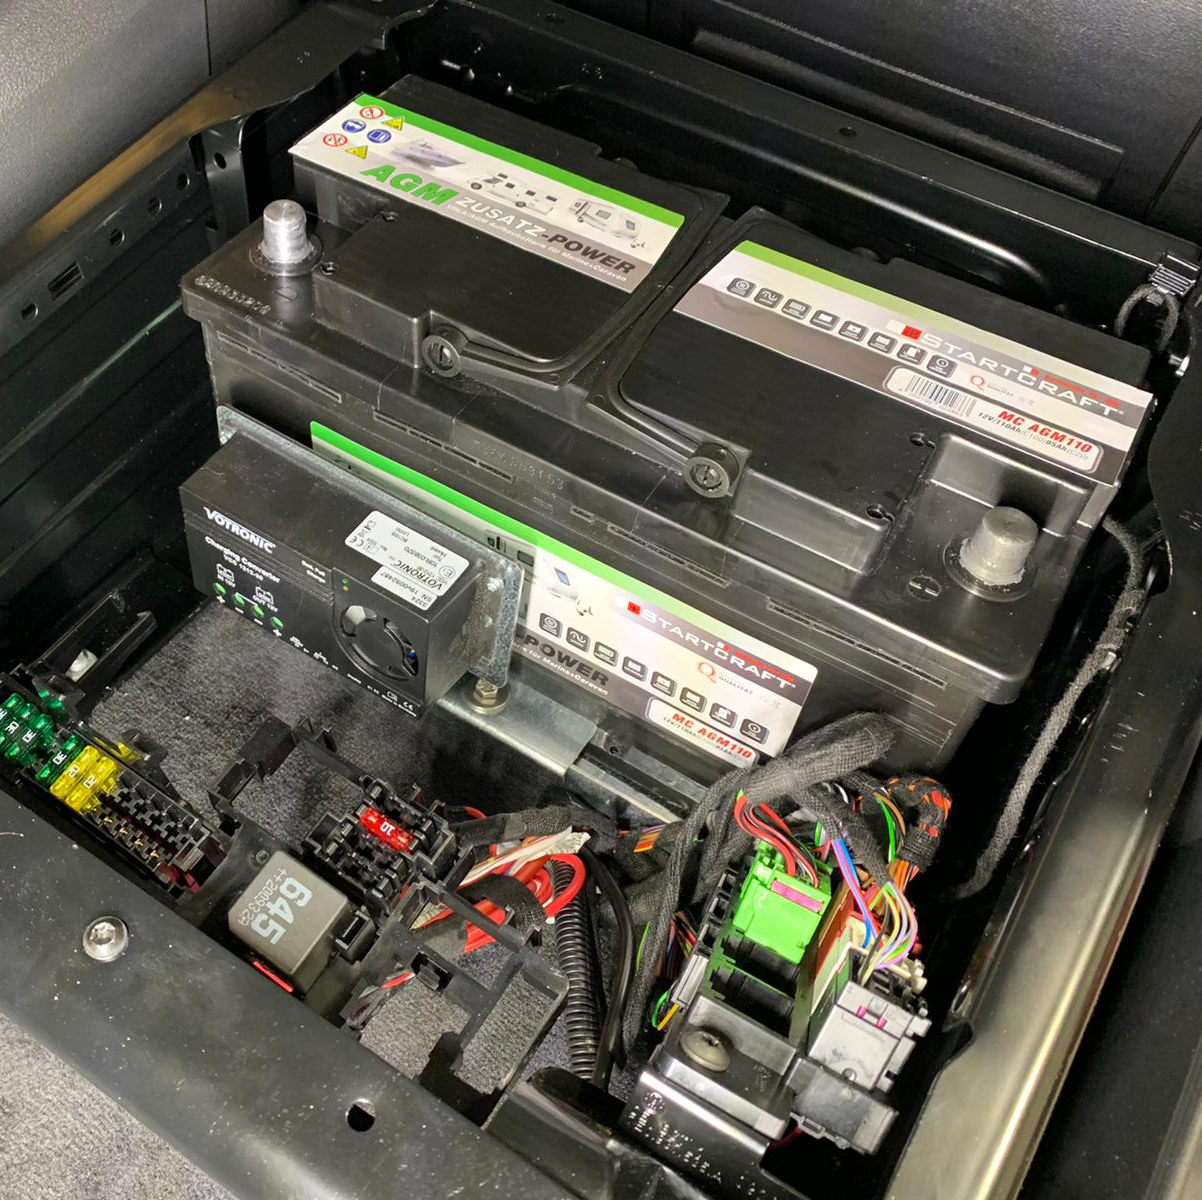 Zweitbatterie VW T5 T6 Camper nachrüsten 